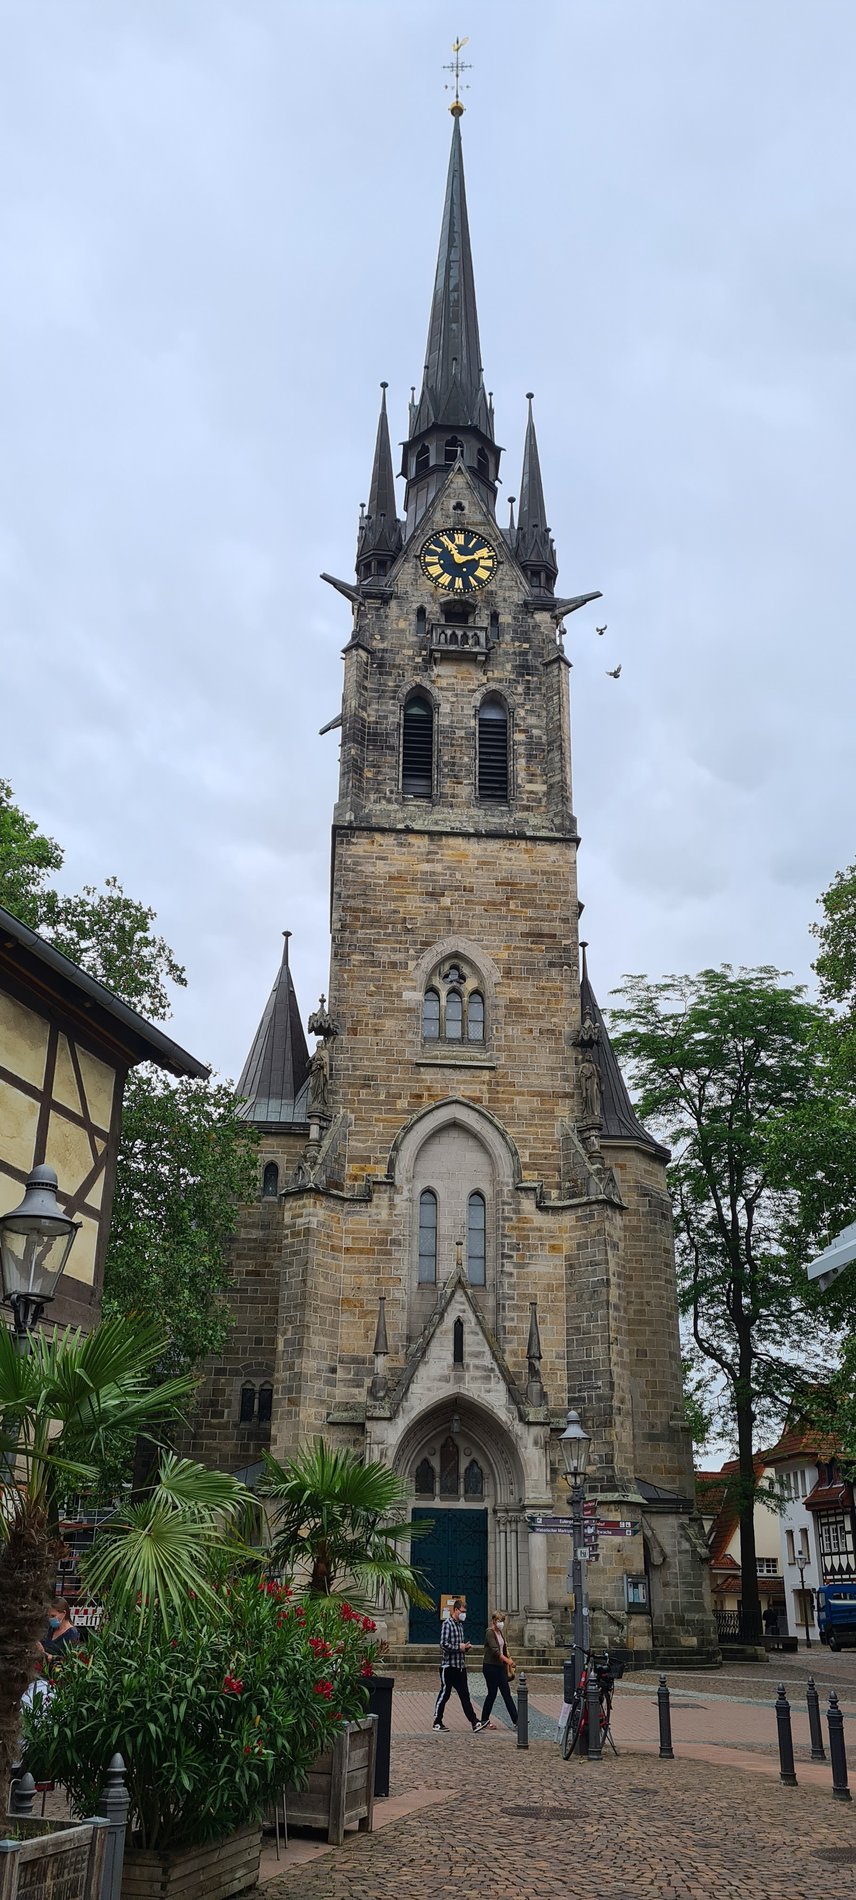 Man blickt frontal auf einen alten Kirchturm aus Stein. Im oberen Teil des Turms ist eine Uhr zu sehen.